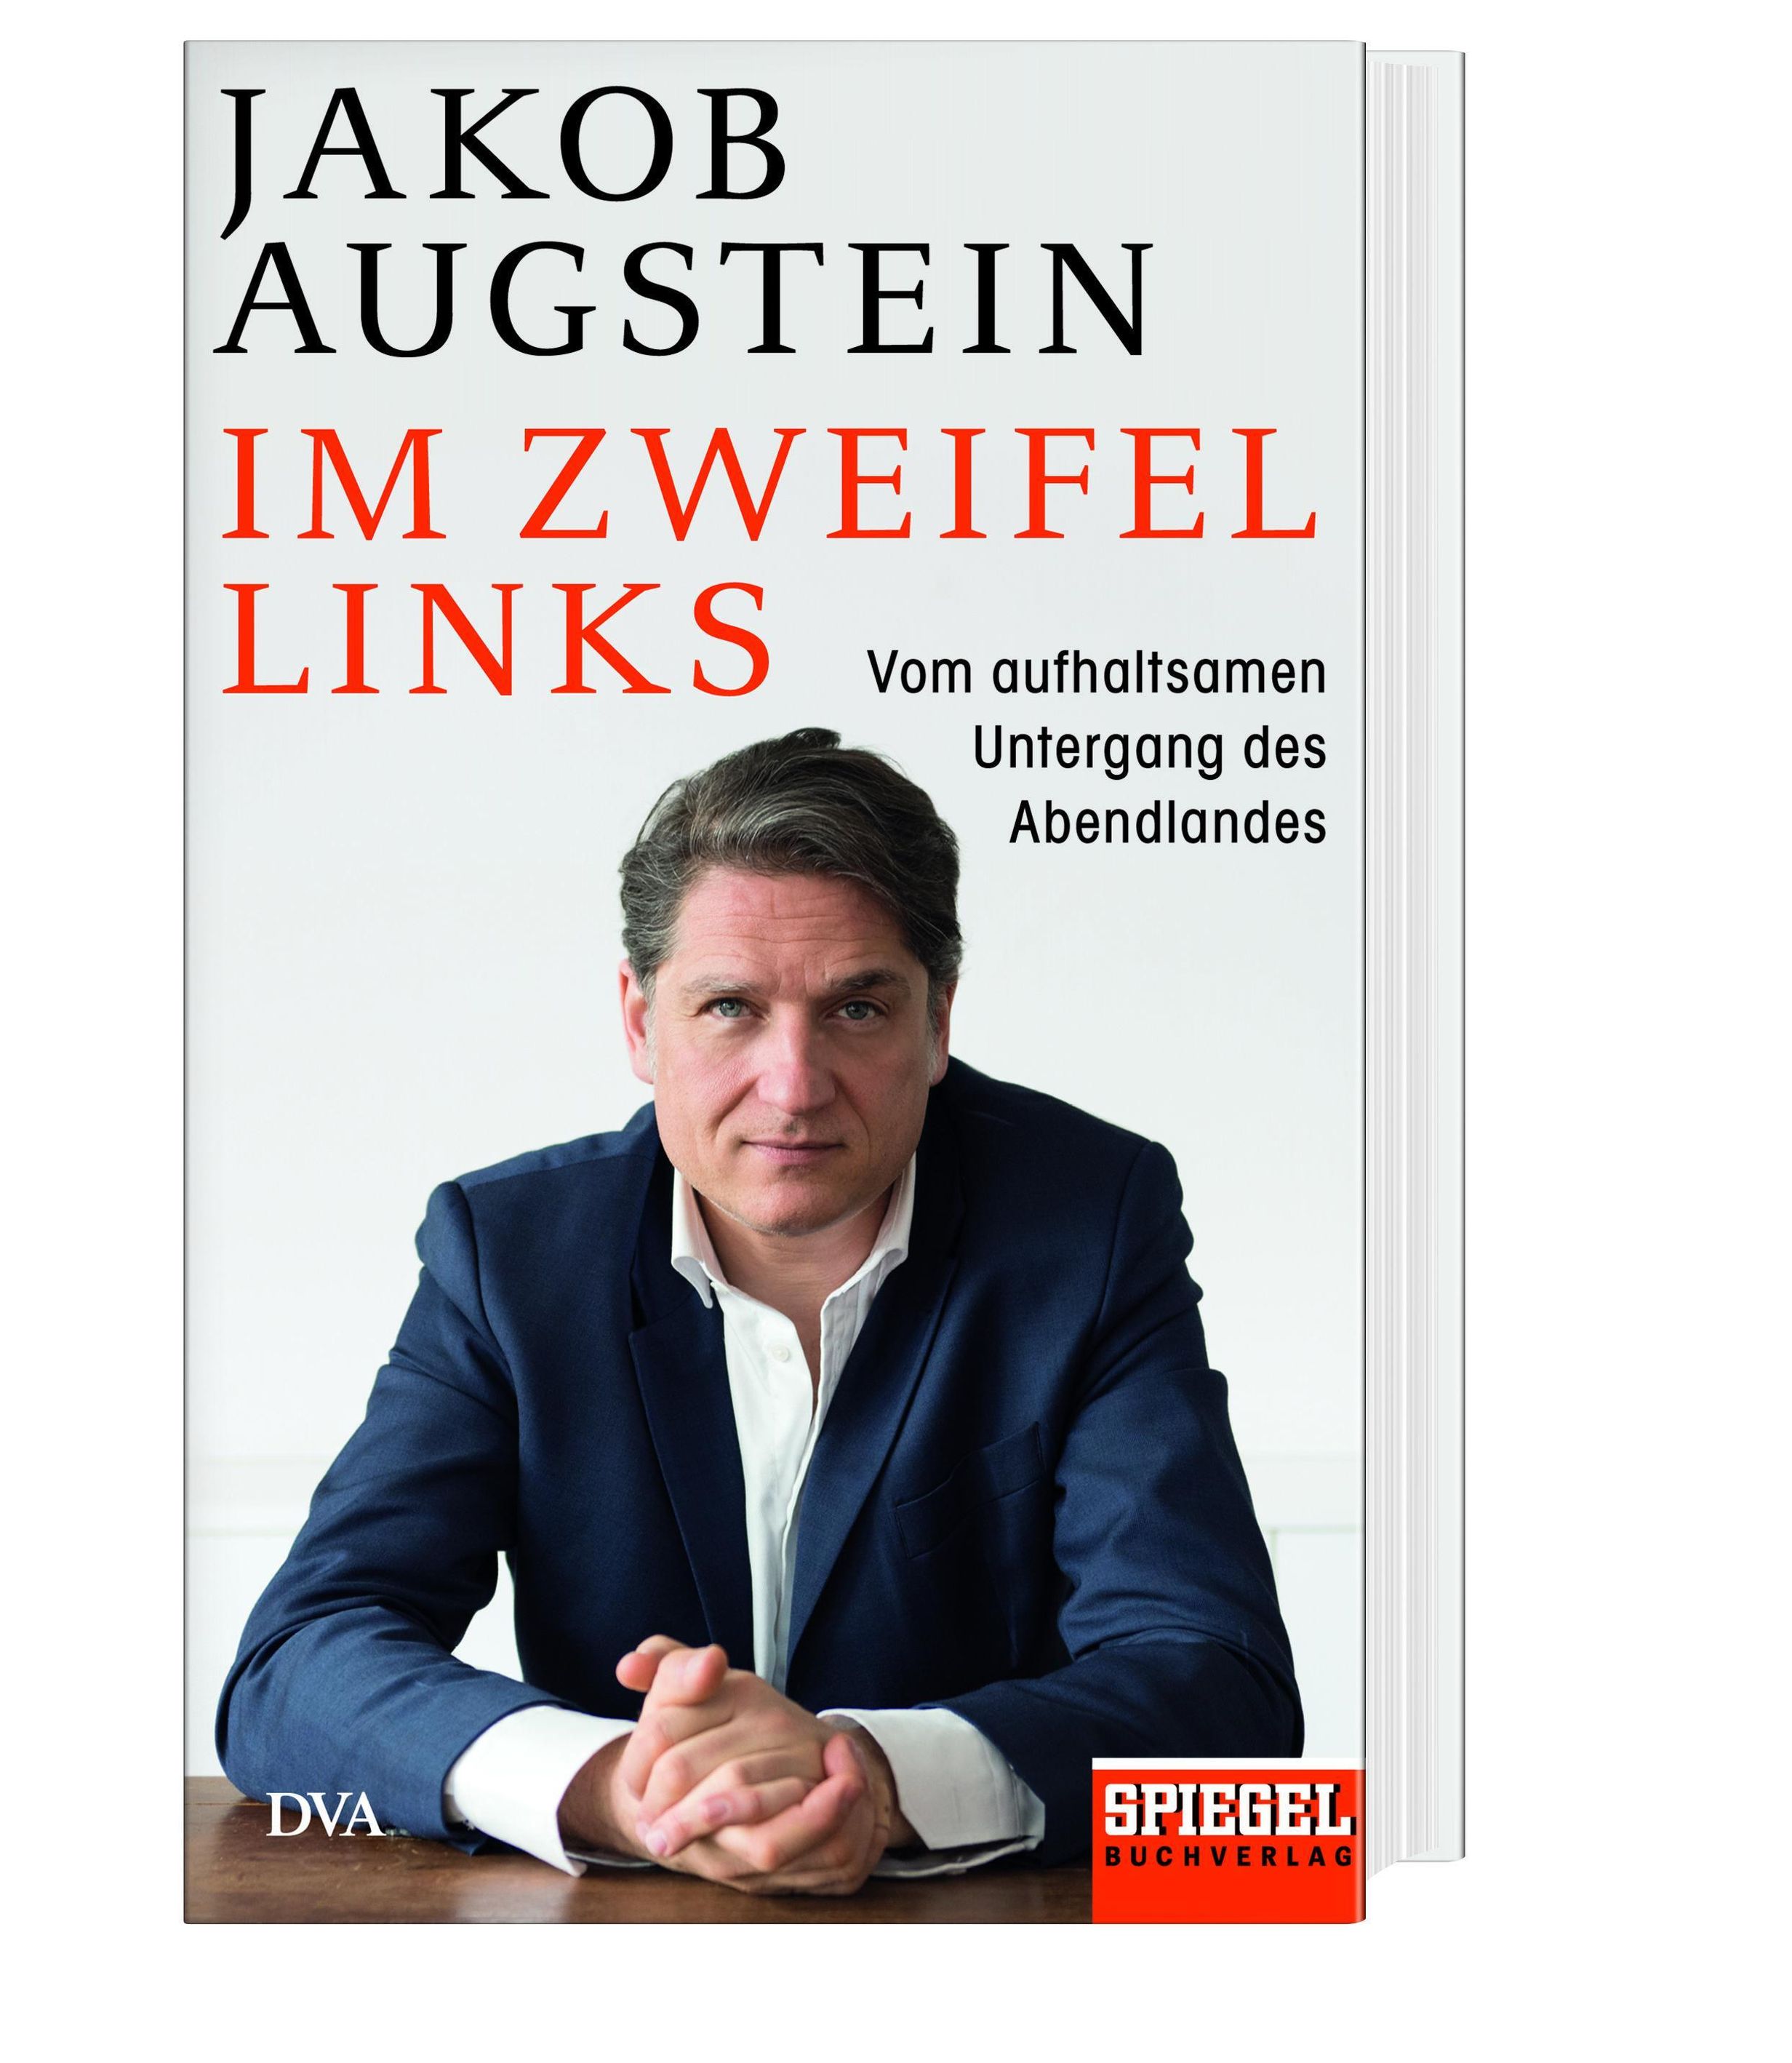 Im Zweifel links Buch von Jakob Augstein versandkostenfrei - Weltbild.at